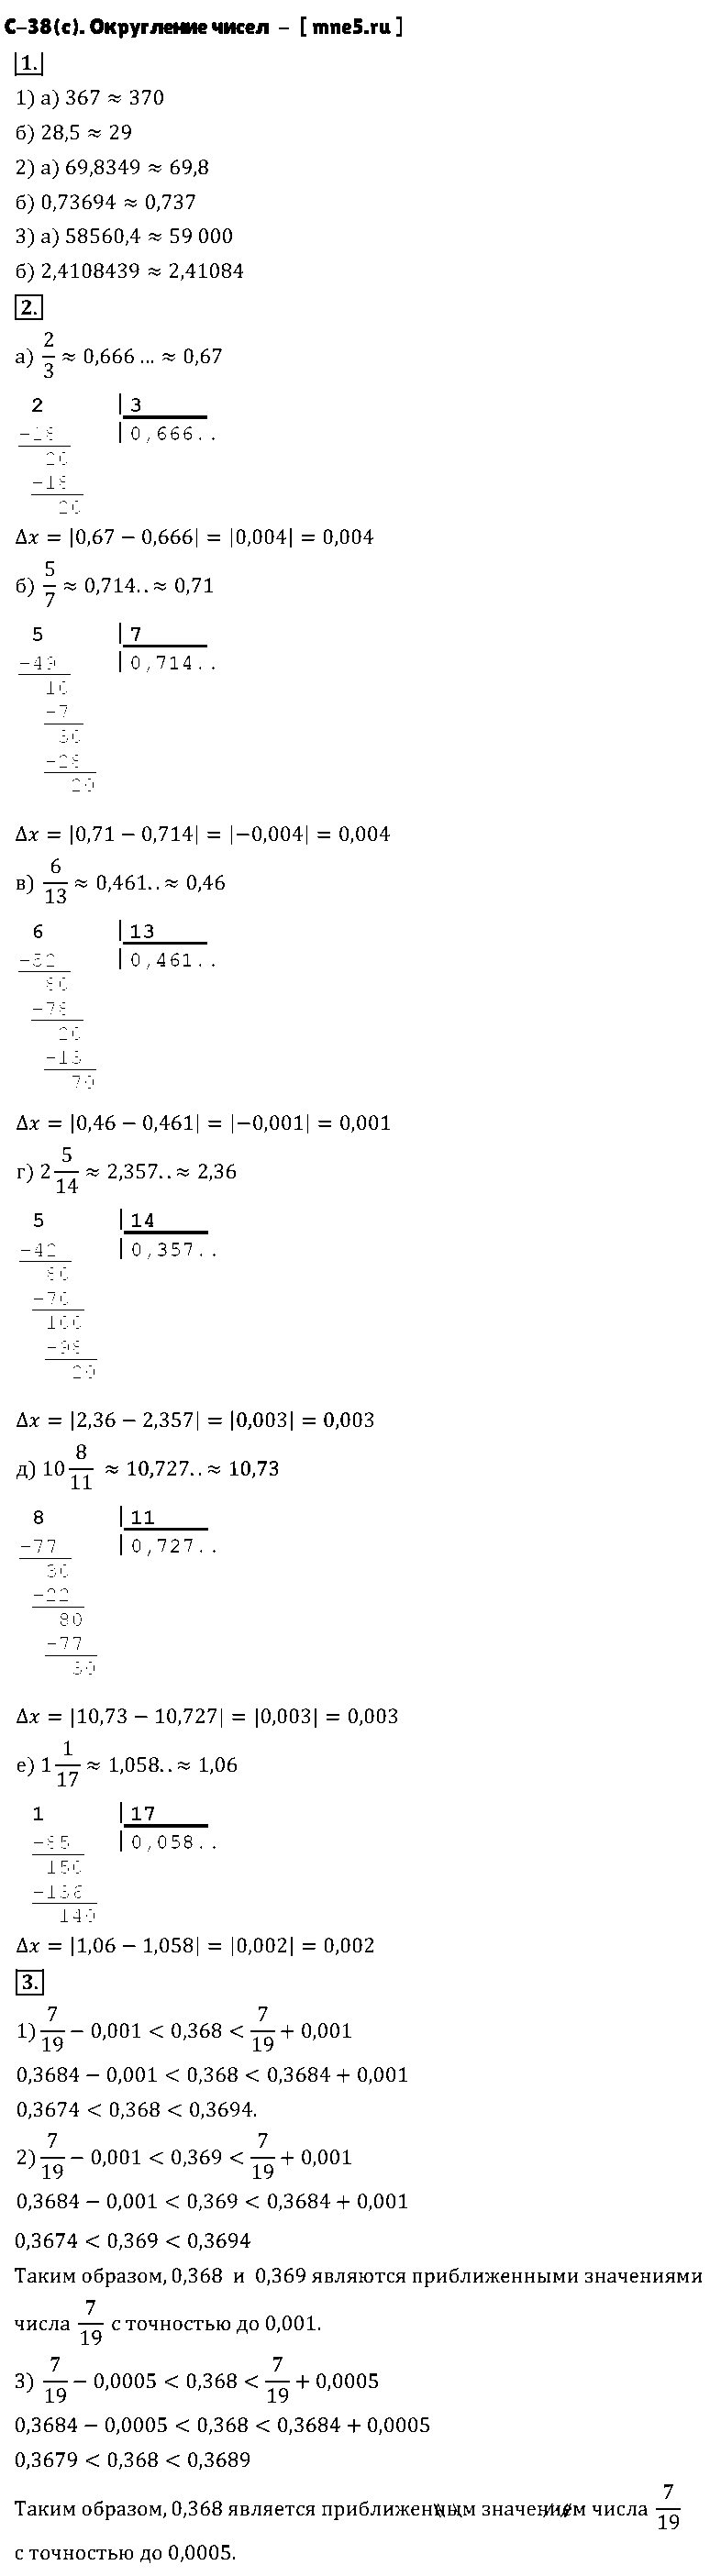 ГДЗ Алгебра 8 класс - С-38(с). Округление чисел